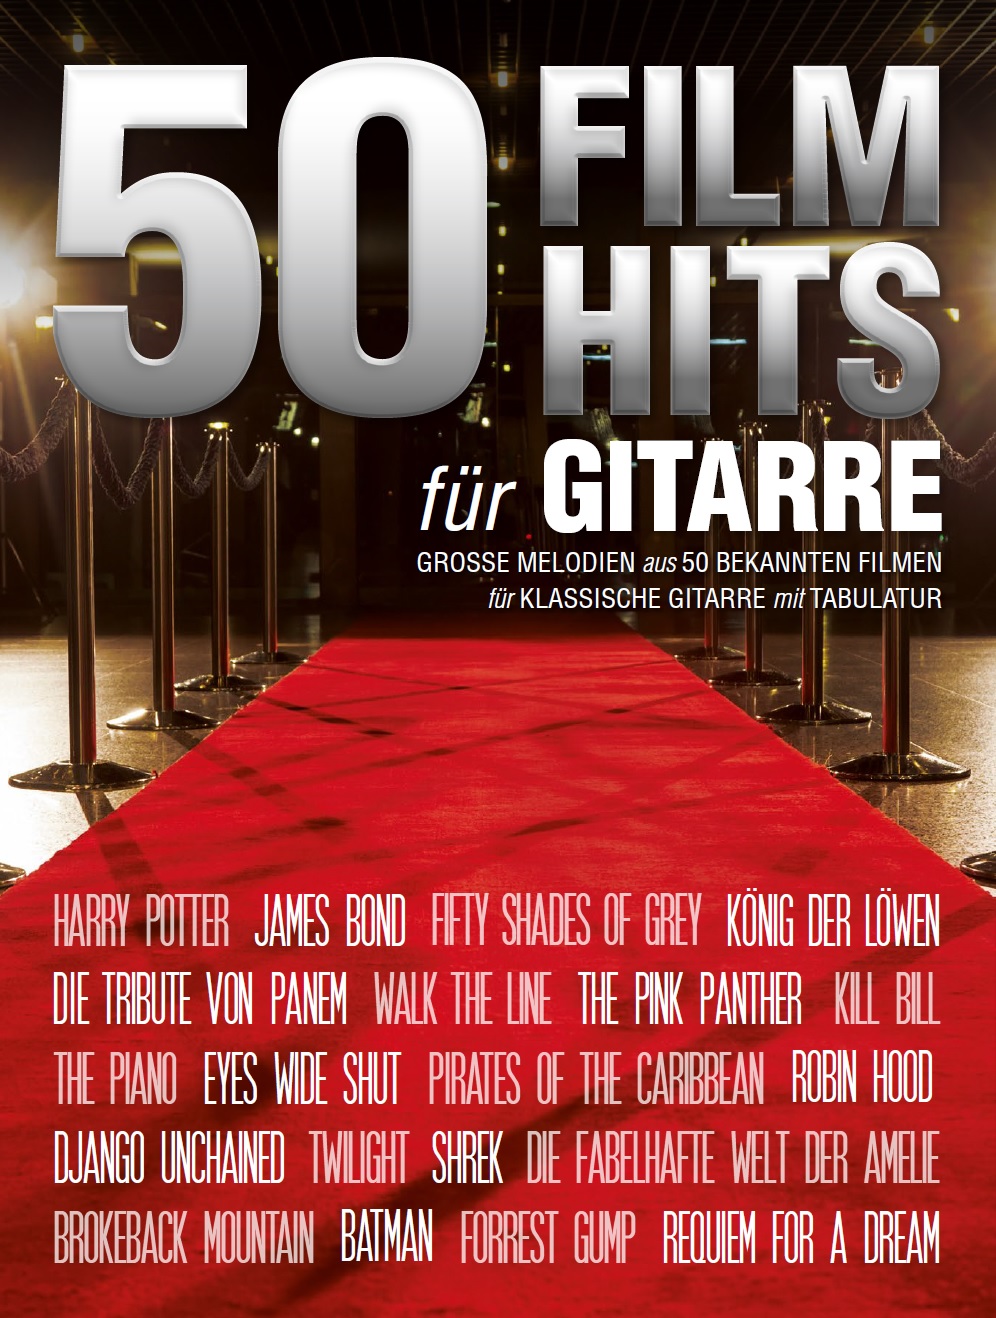 50 Film Hits für Gitarre